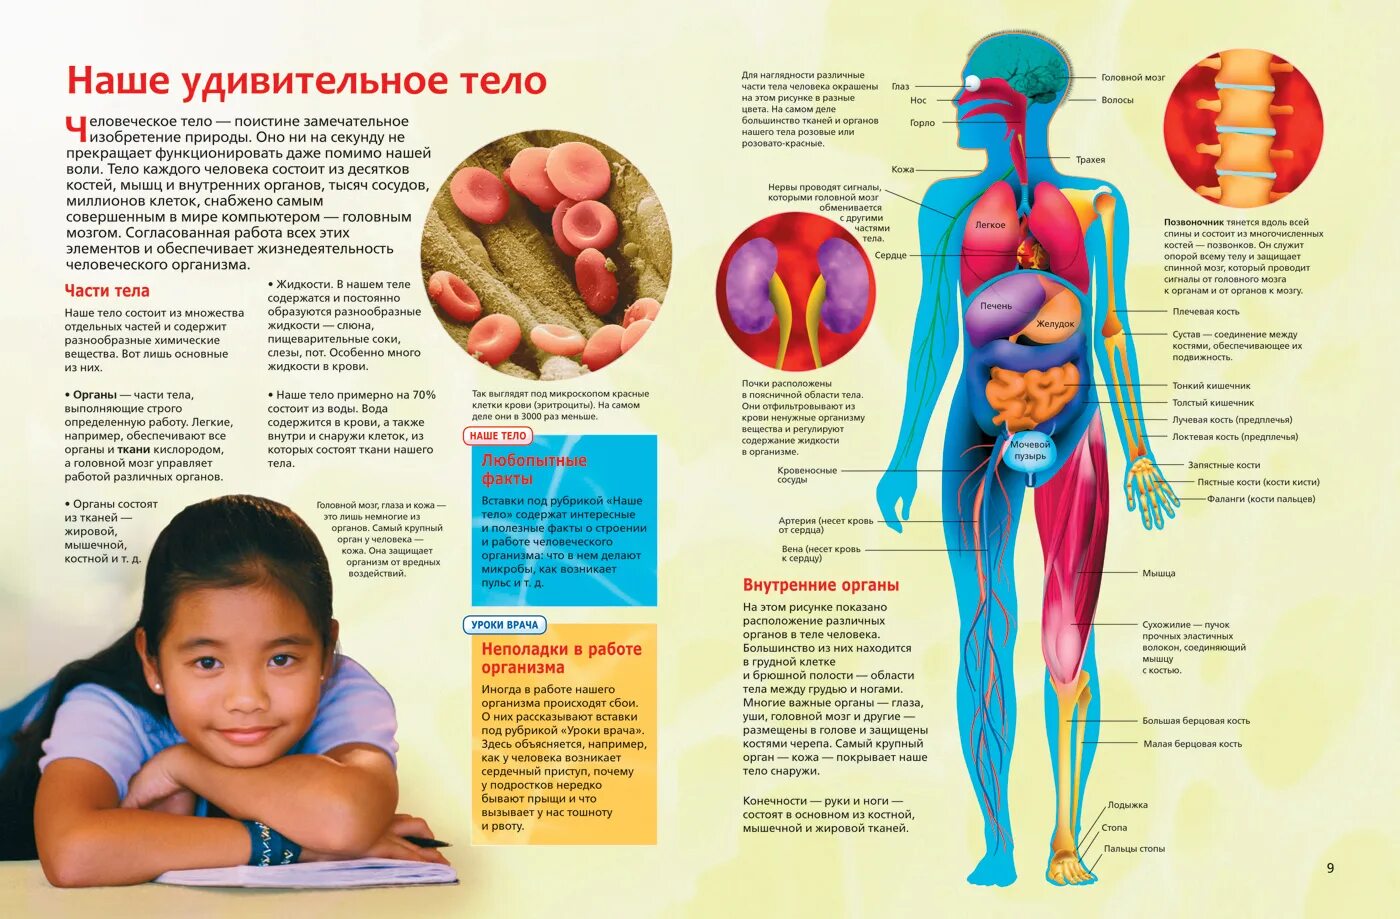 Интересные сведения о человеческом теле. Анатомия человека. Интересные факты об органах человека. Анатомия человека для детей. Можно человеческим объяснить